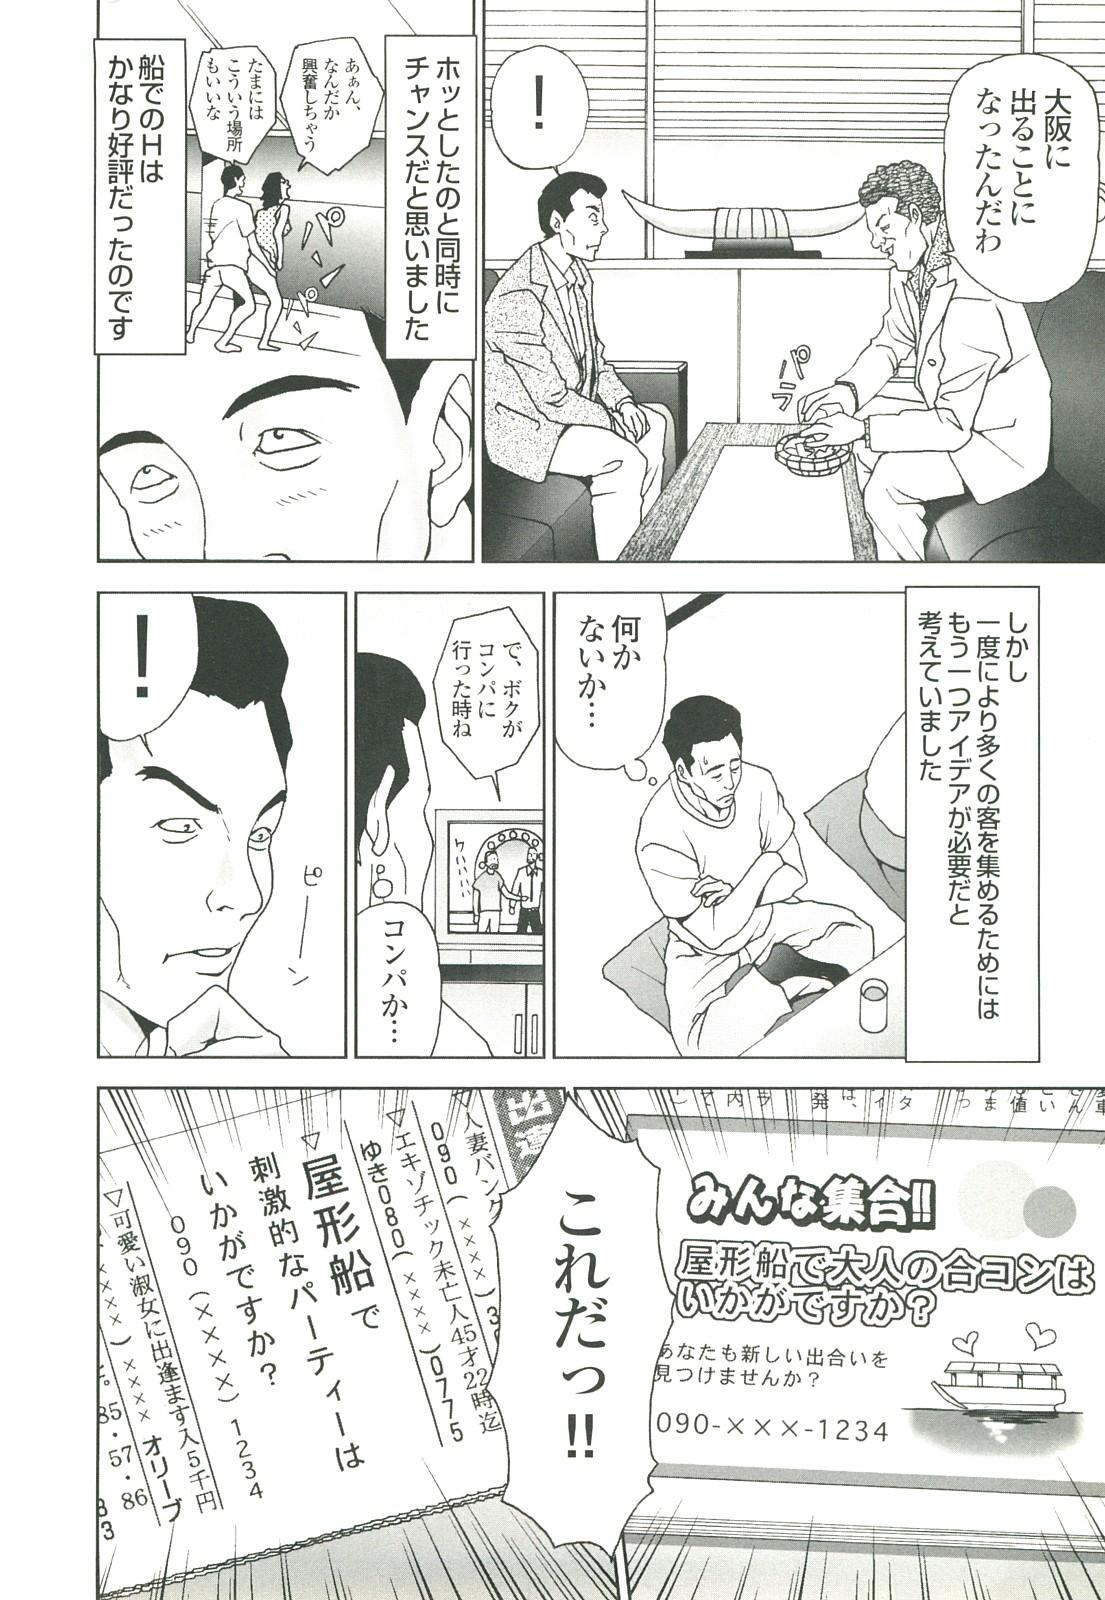 コミック裏モノJAPAN Vol.18 今井のりたつスペシャル号 283